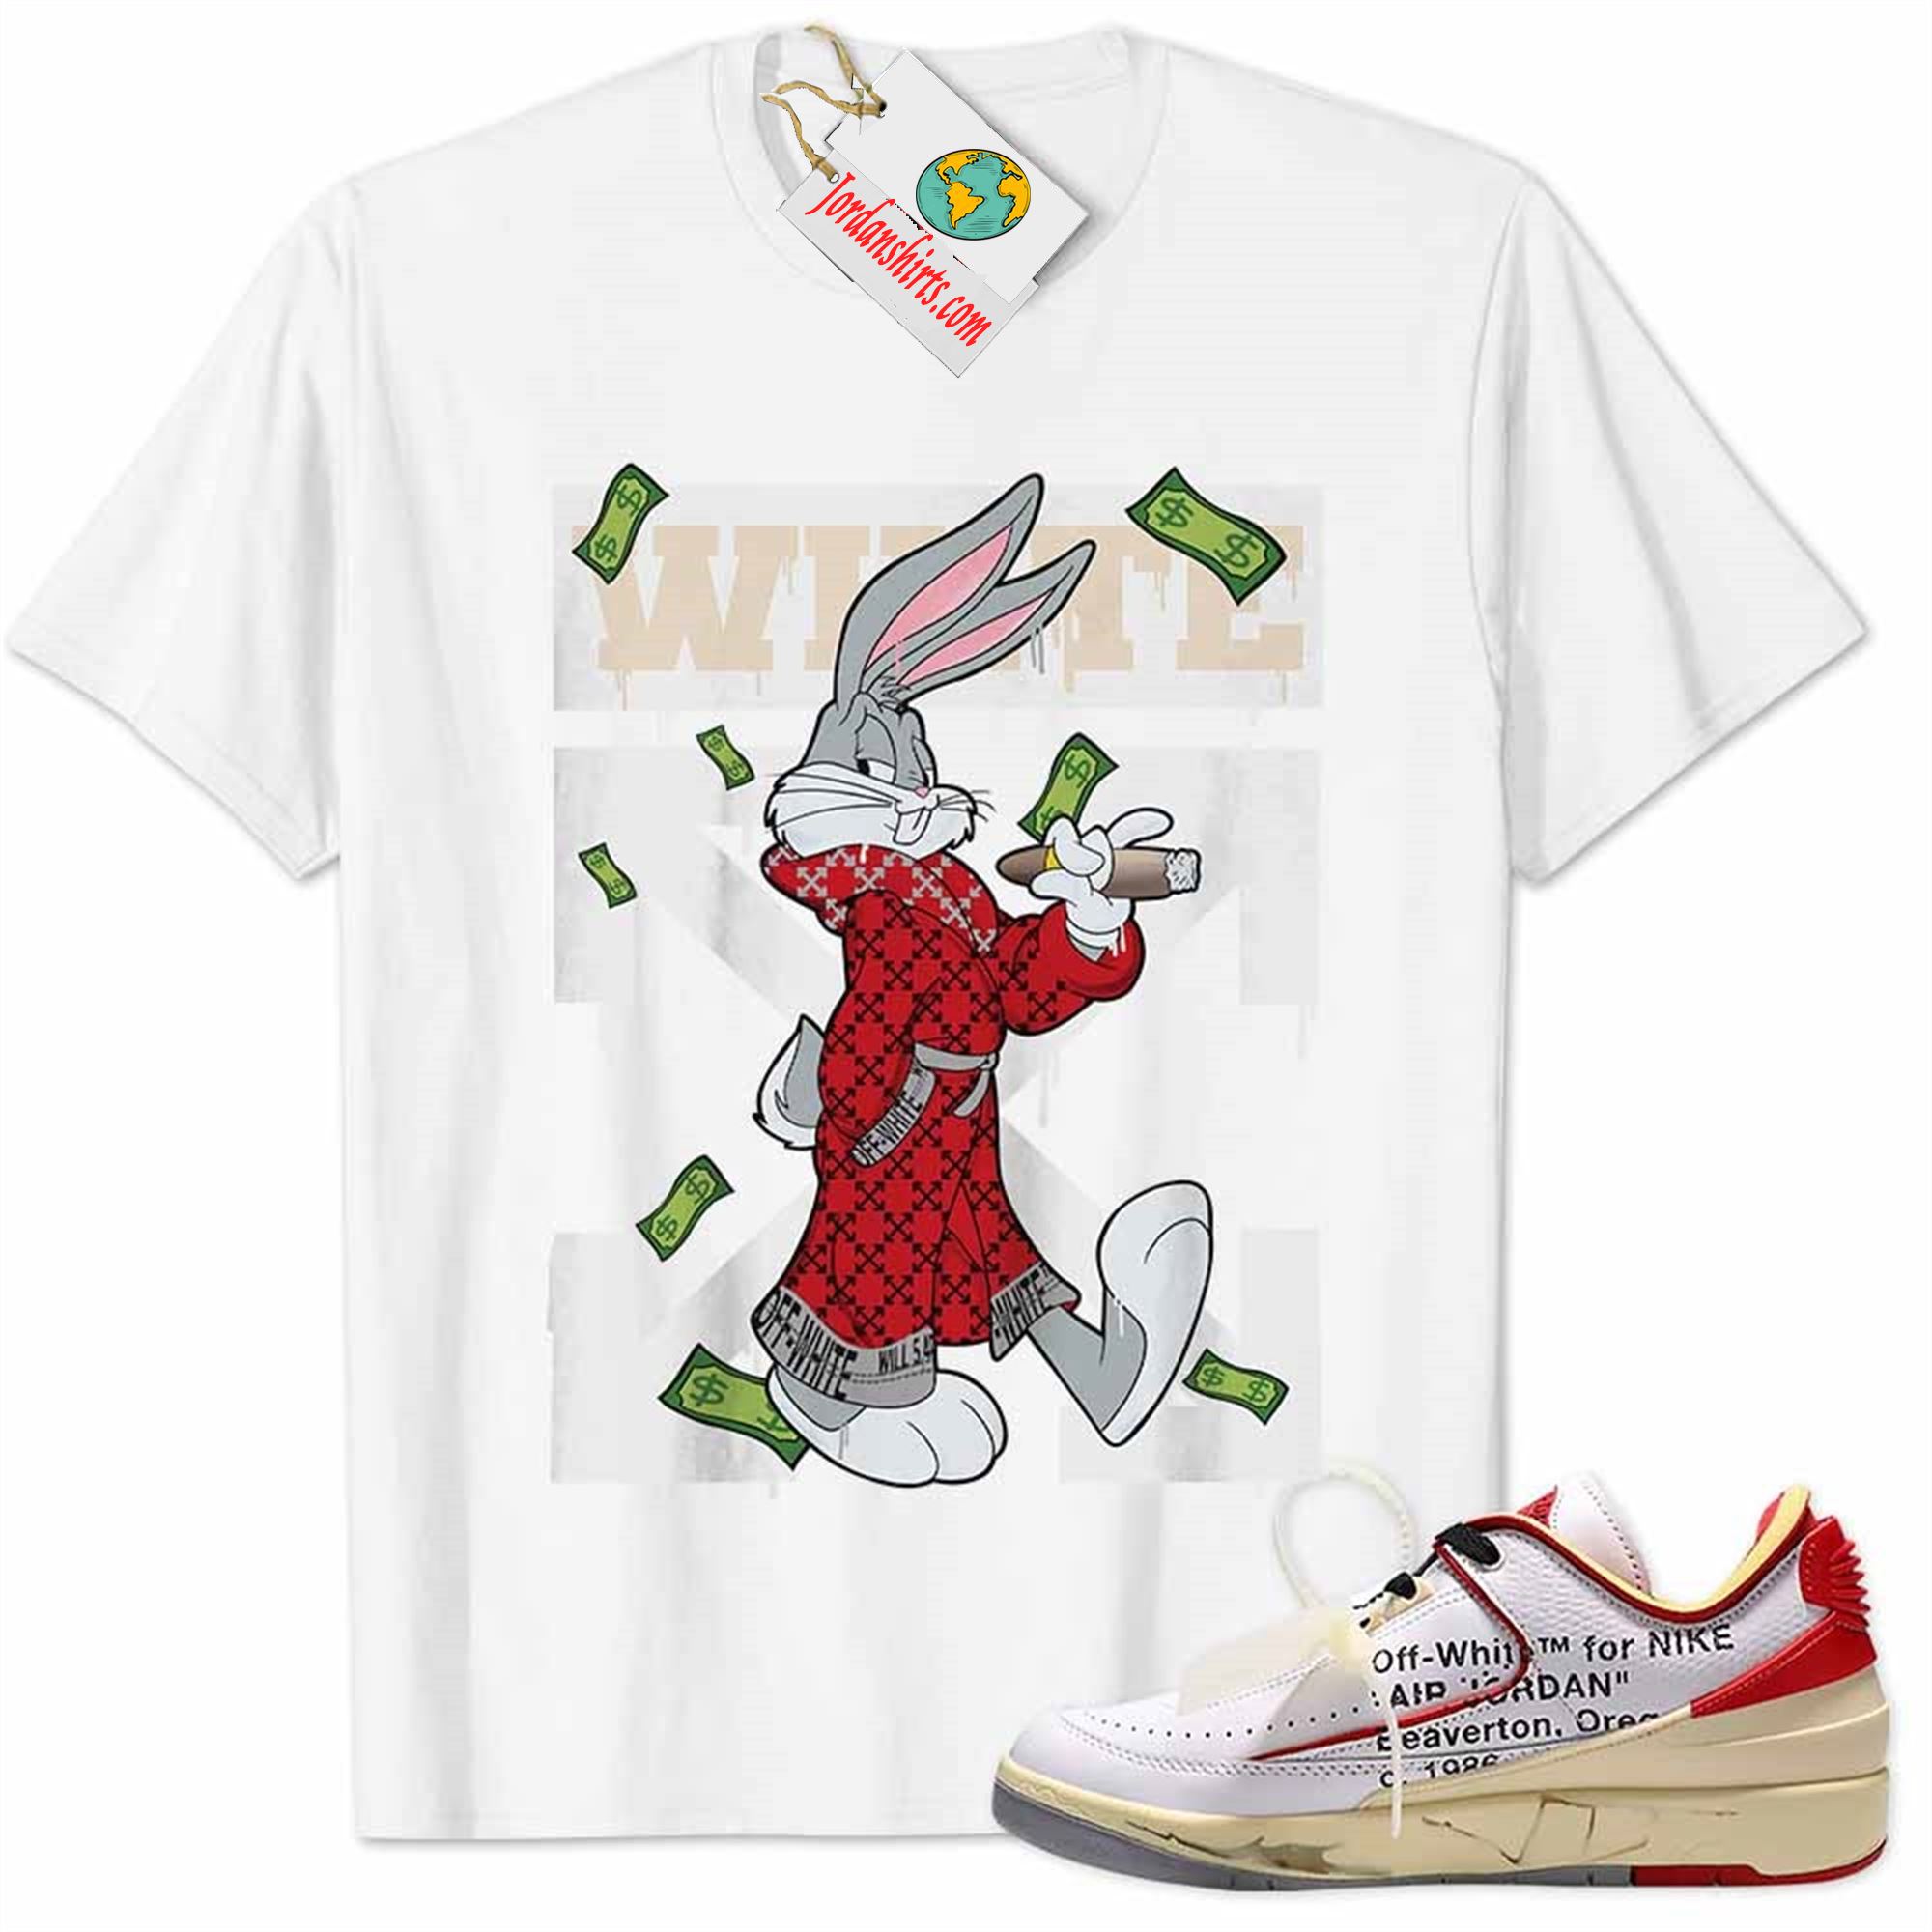 Jordan 2 Shirt, Jordan 2 Low White Red Off-white Shirt Bug Bunny Smokes Weed Money Falling White Size Up To 5xl